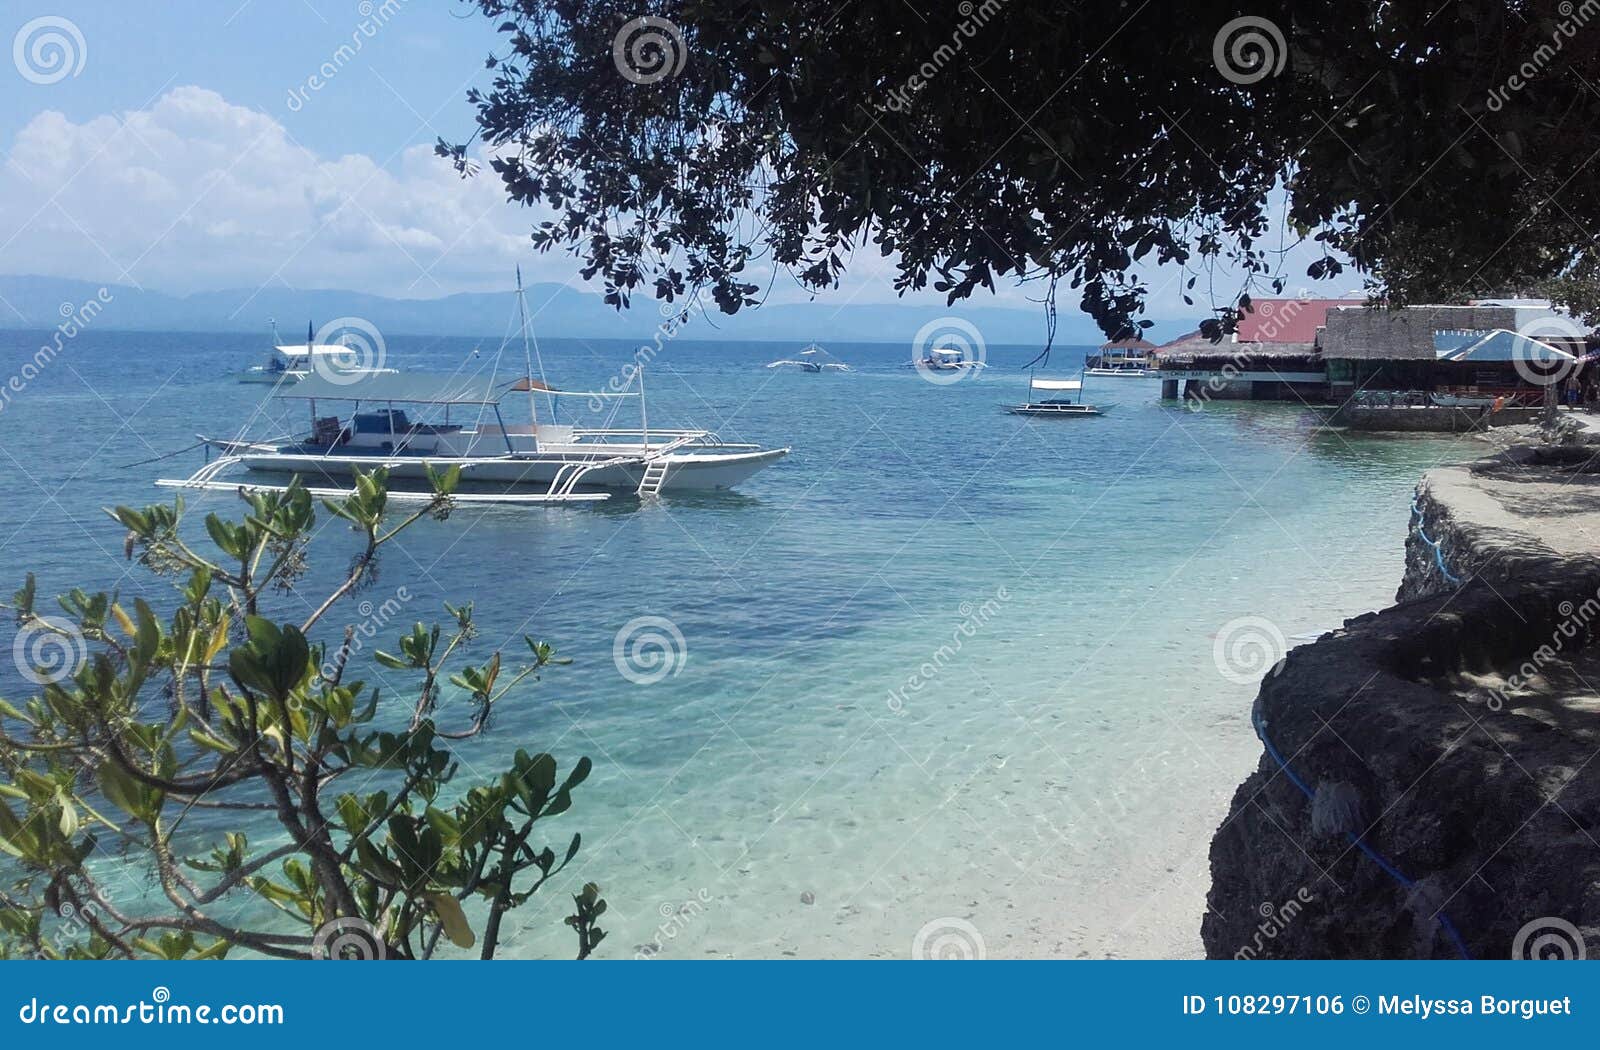 Het doorzichtige eiland Filippijnen van watercebu. Natuurlijke landschappen van Filippijnen 

Blauw water met boot zonnige natuurlijke dag 

Het eiland Filippijnen van Cebu